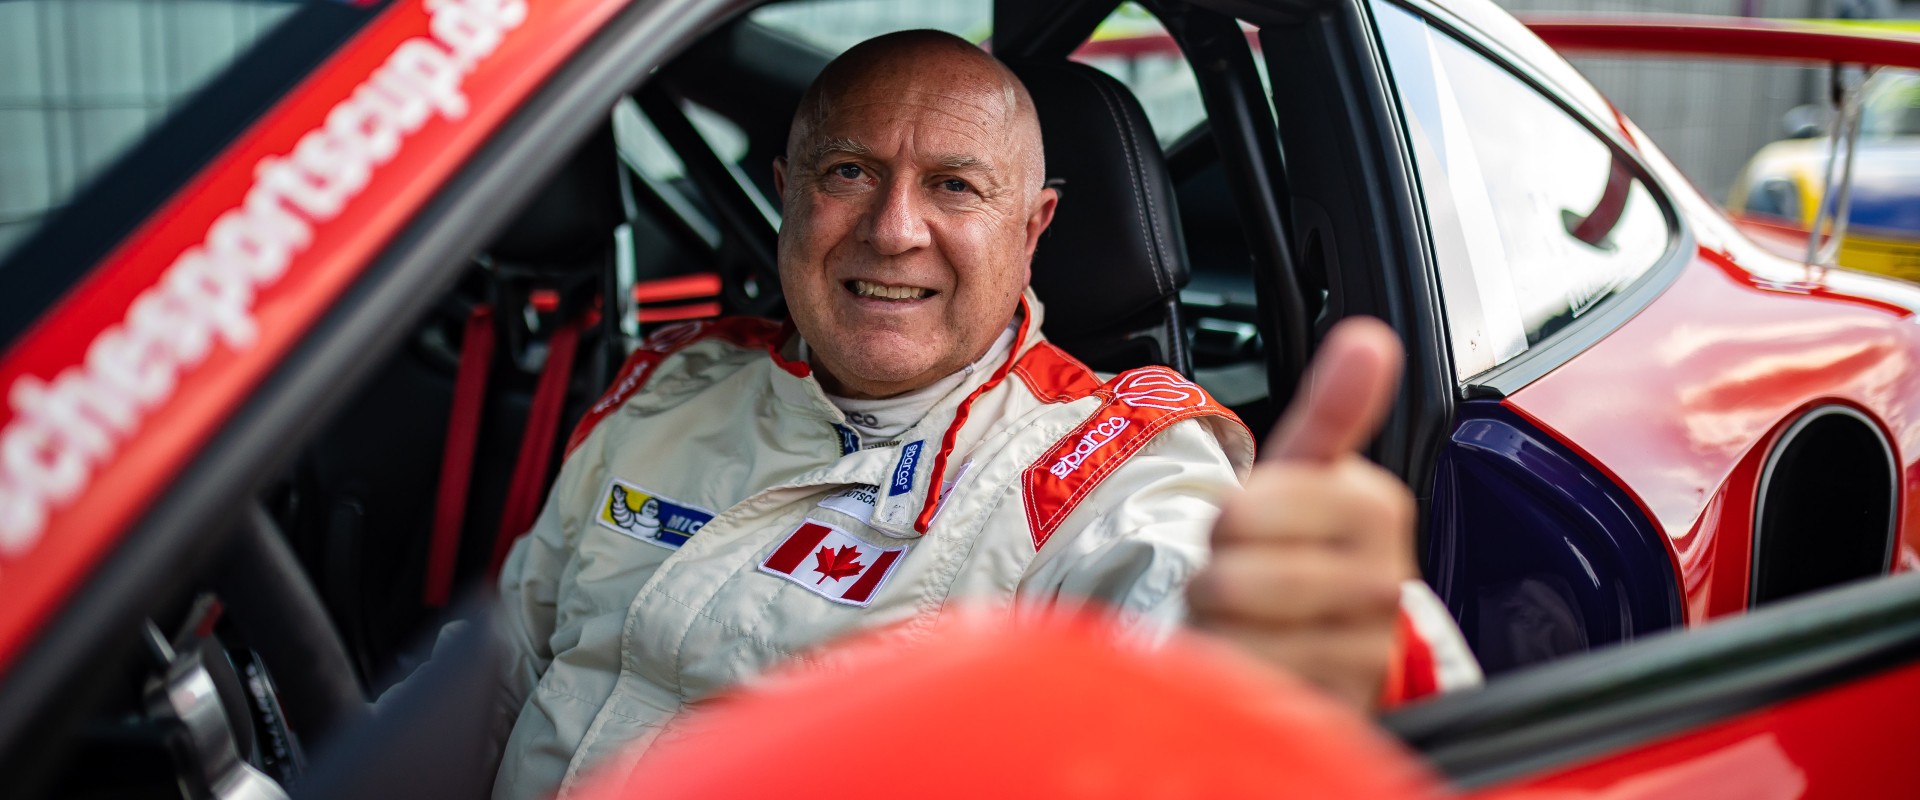 Záchranářská práce, říká Šmarda po podniku Porsche Sports Cup Deutschland